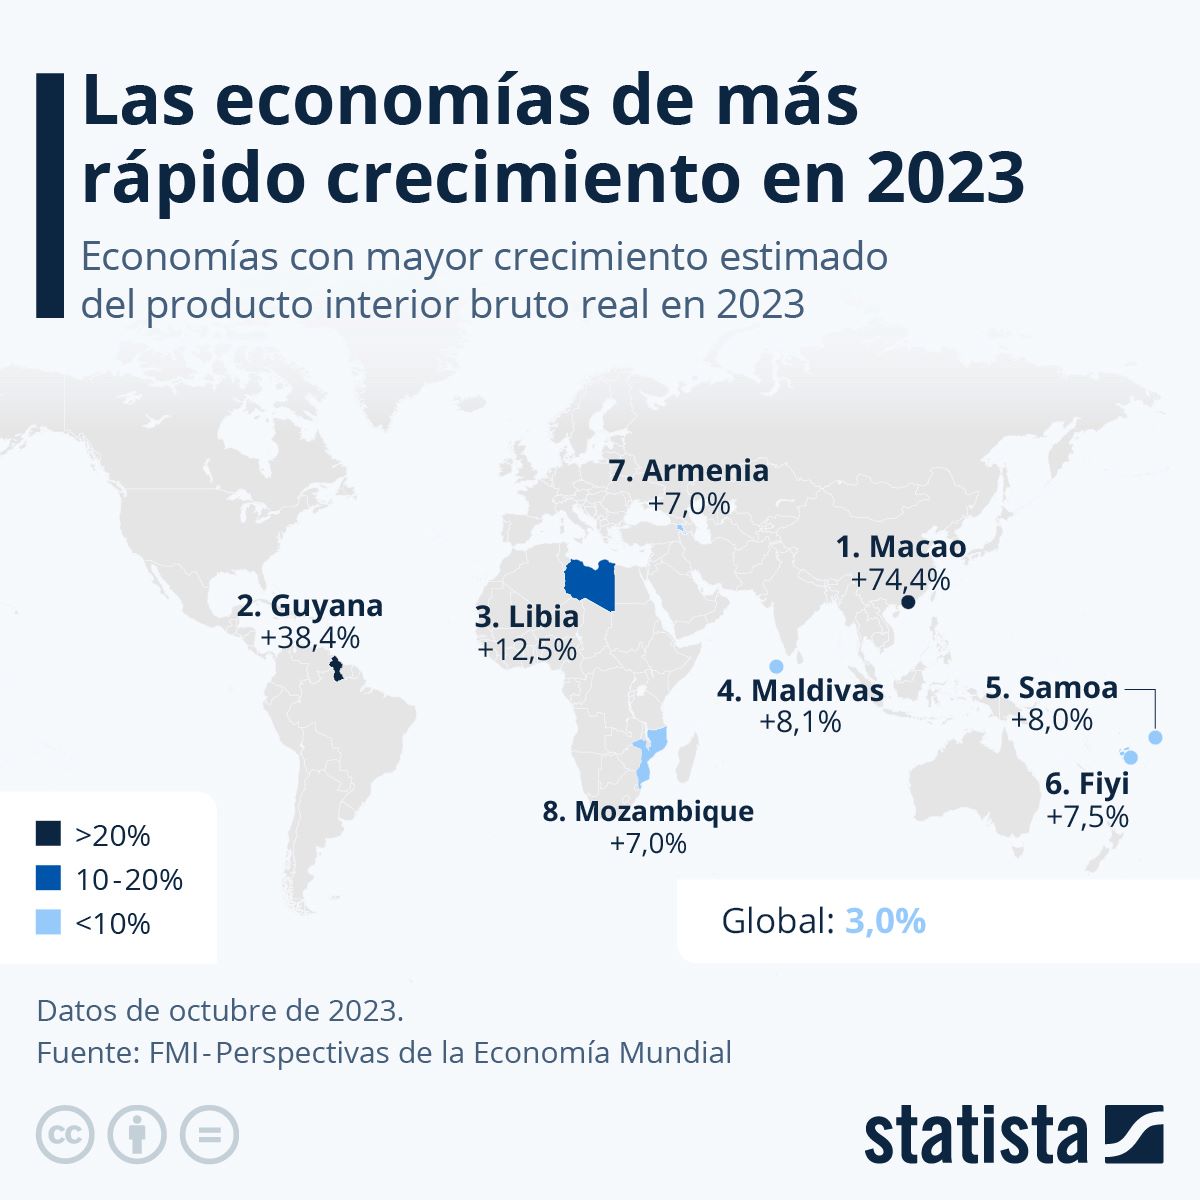 #Ranking Macao y Guyana fueron las economías de más rápido crecimiento en 2023